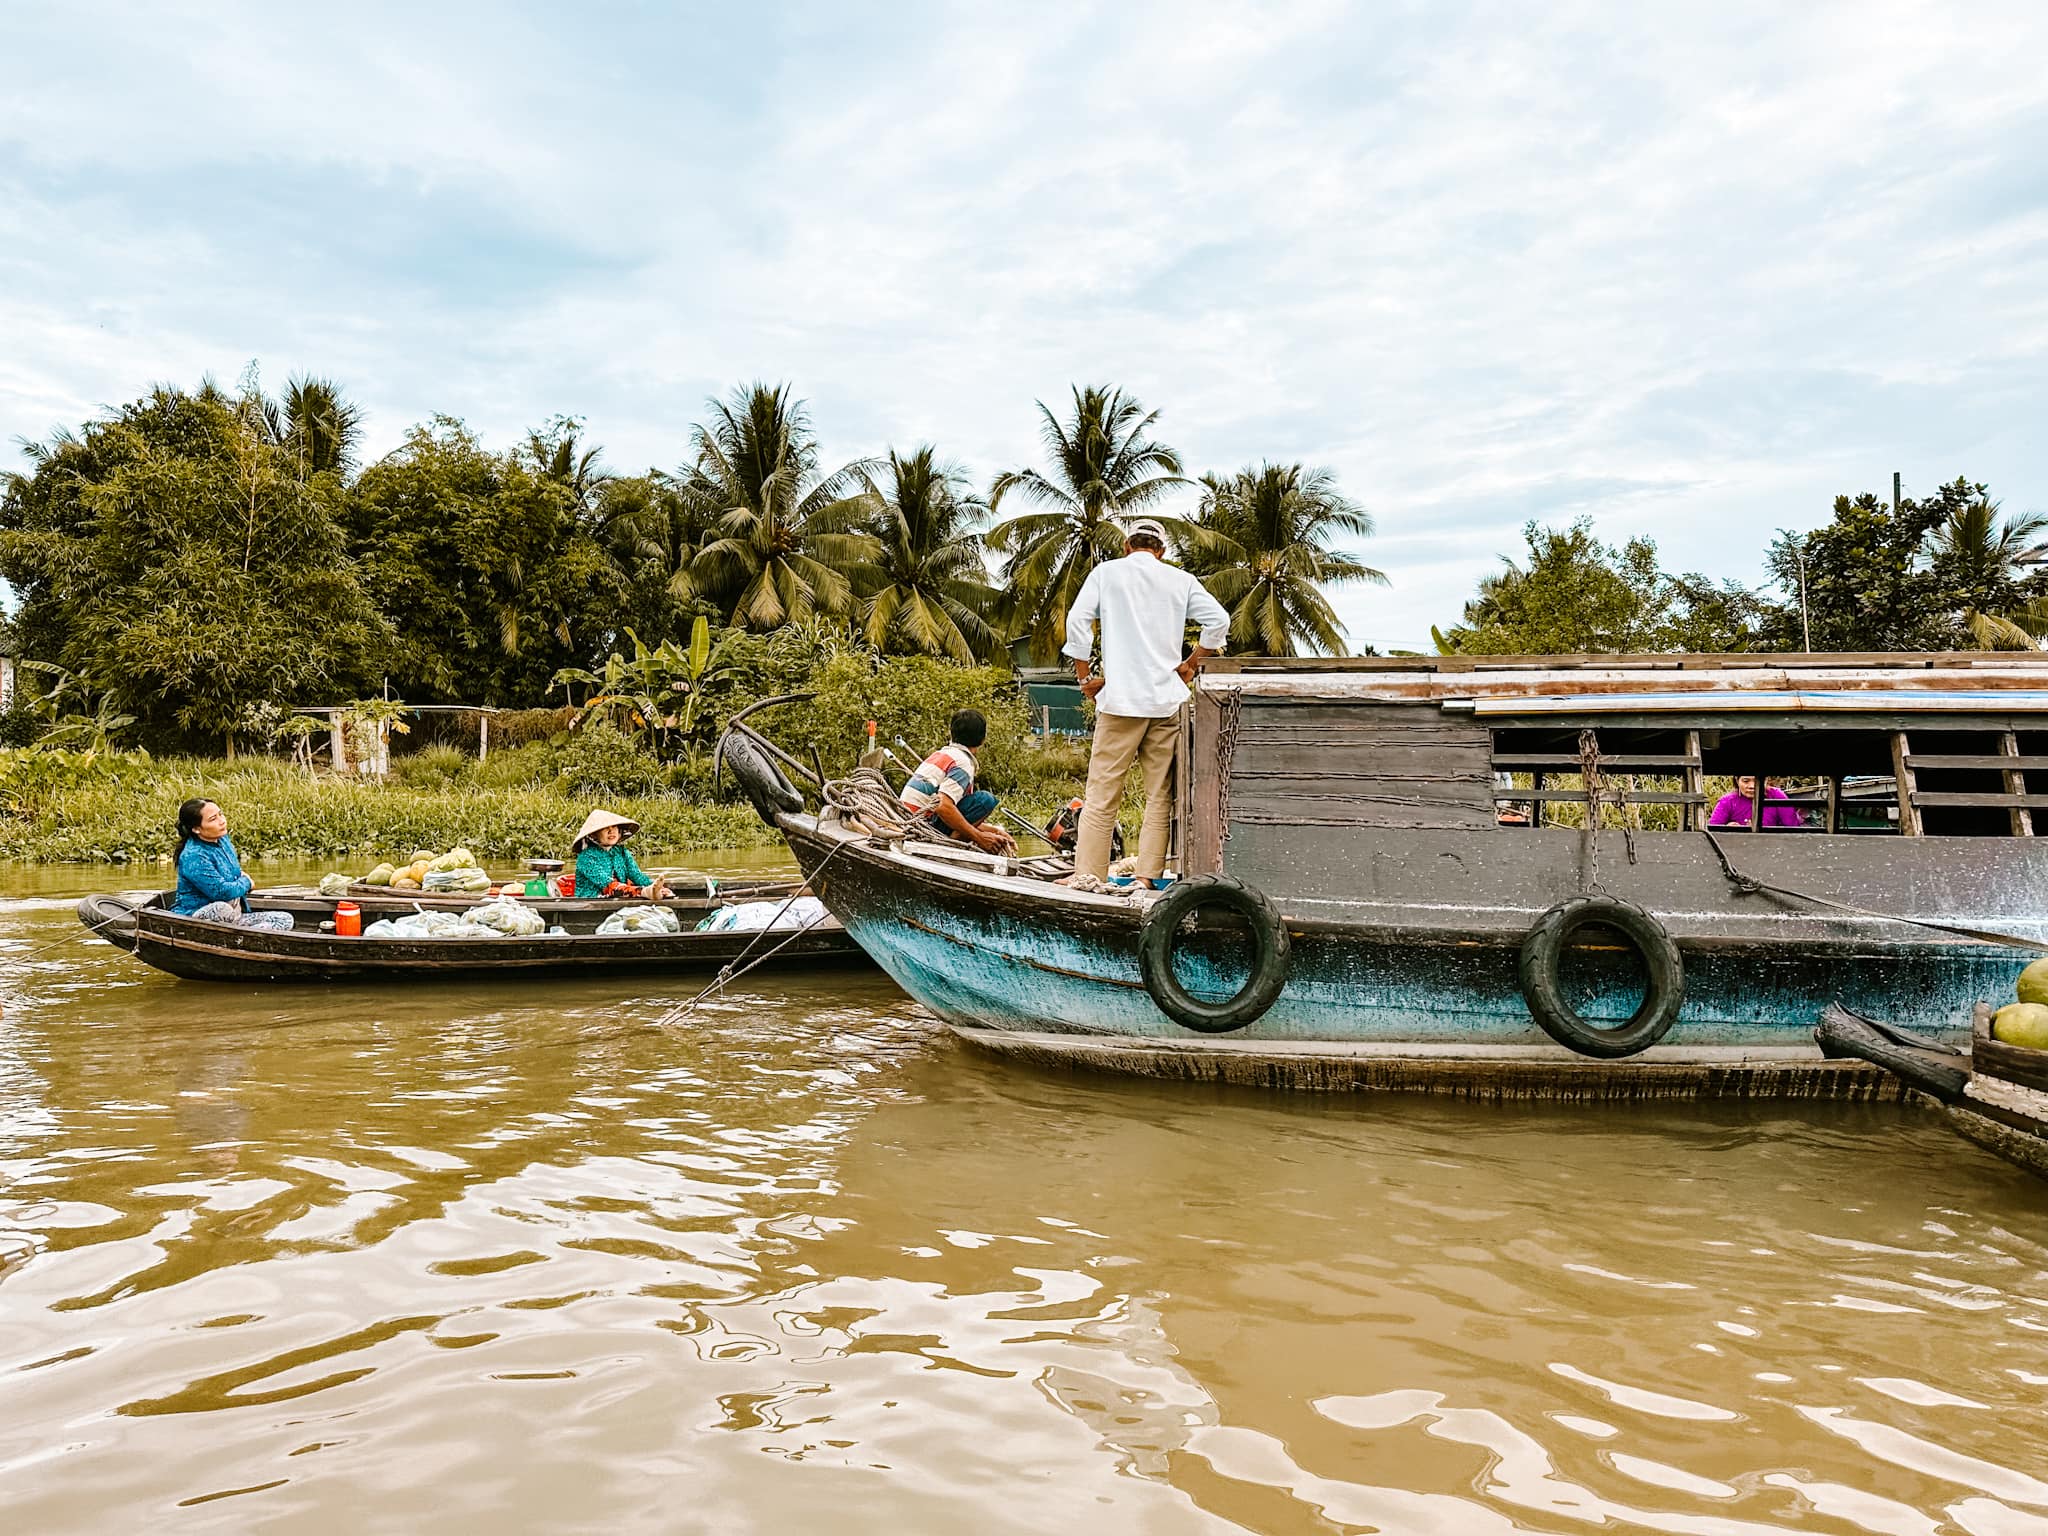 Visiting Mekong Delta